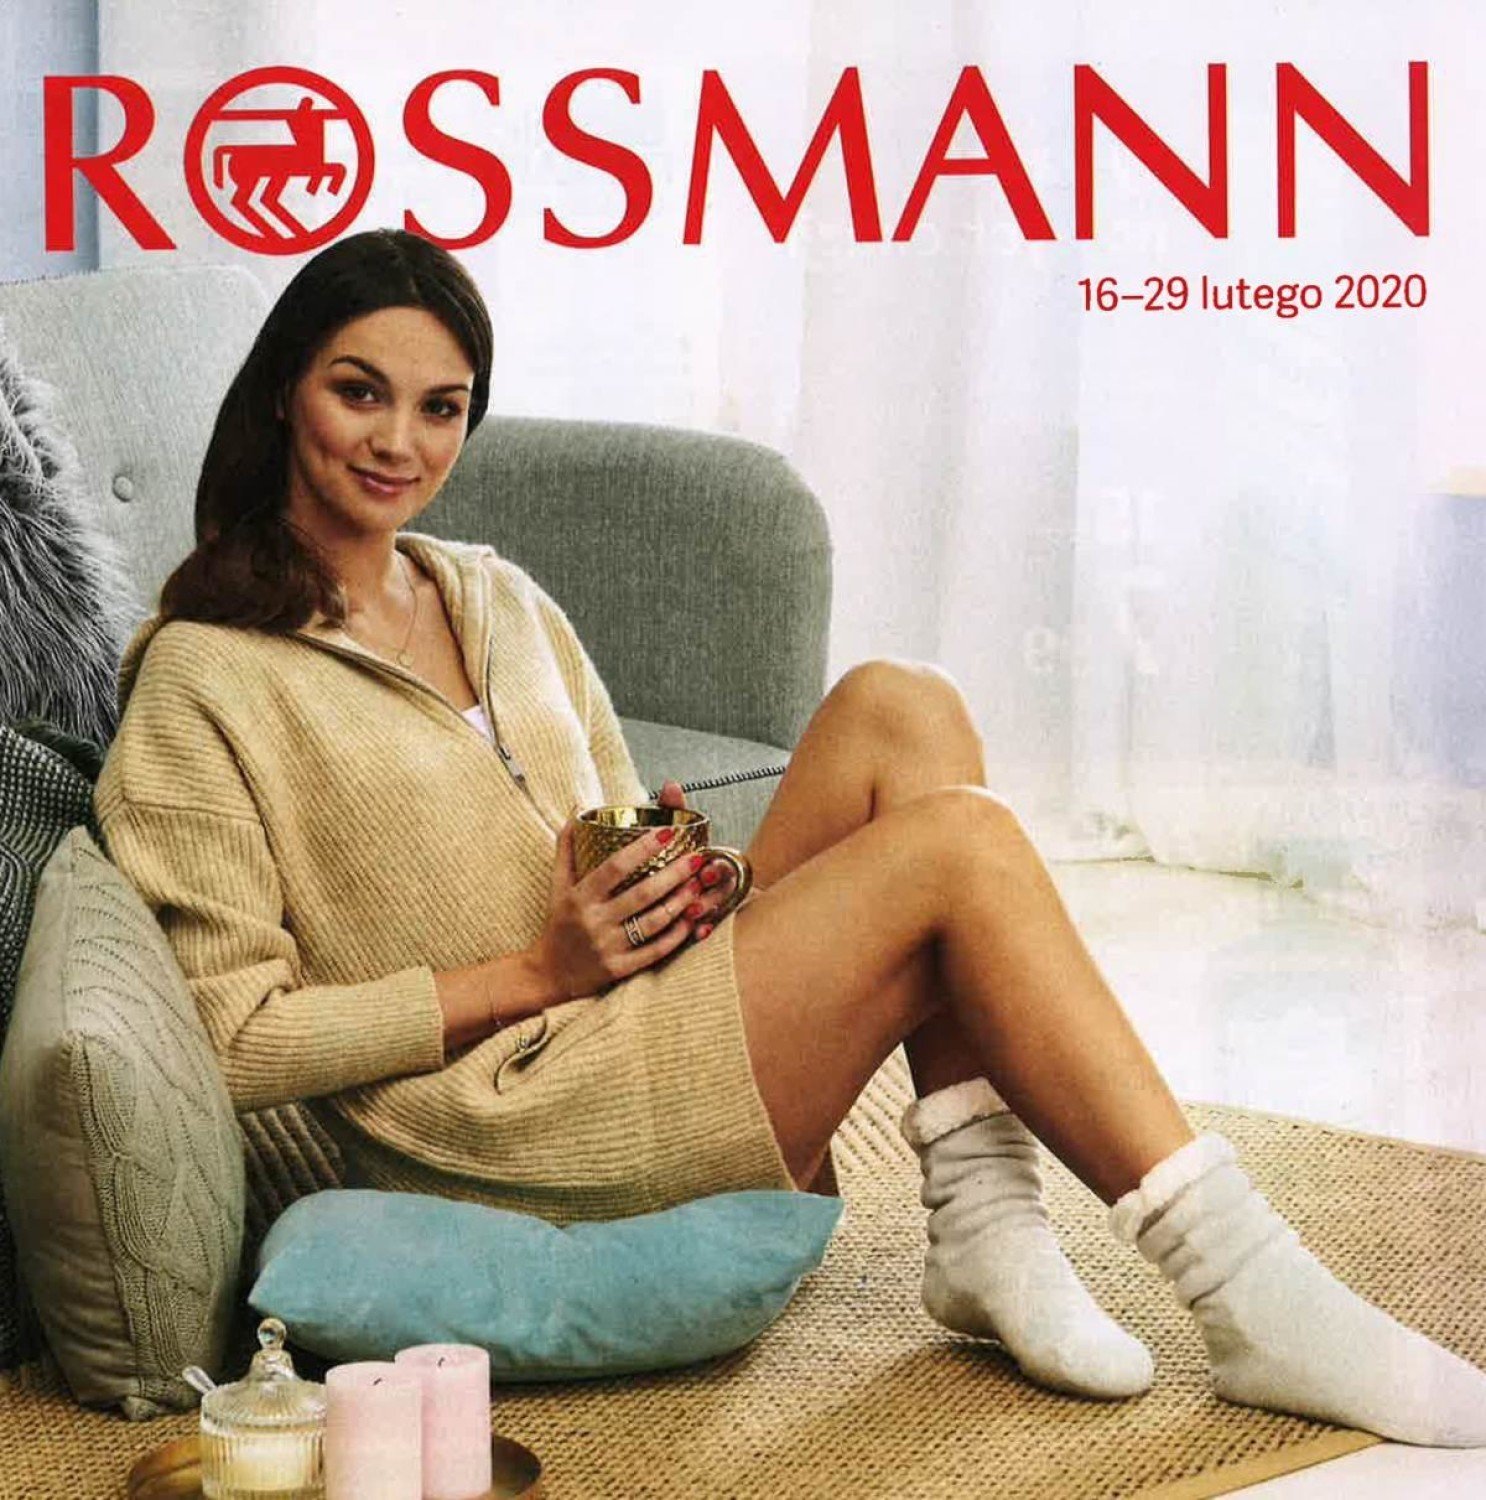 Rossmann -55% na makijaż. Kiedy rozpocznie się promocja? [AKTUALNA GAZETKA]  | Wrocław Nasze Miasto